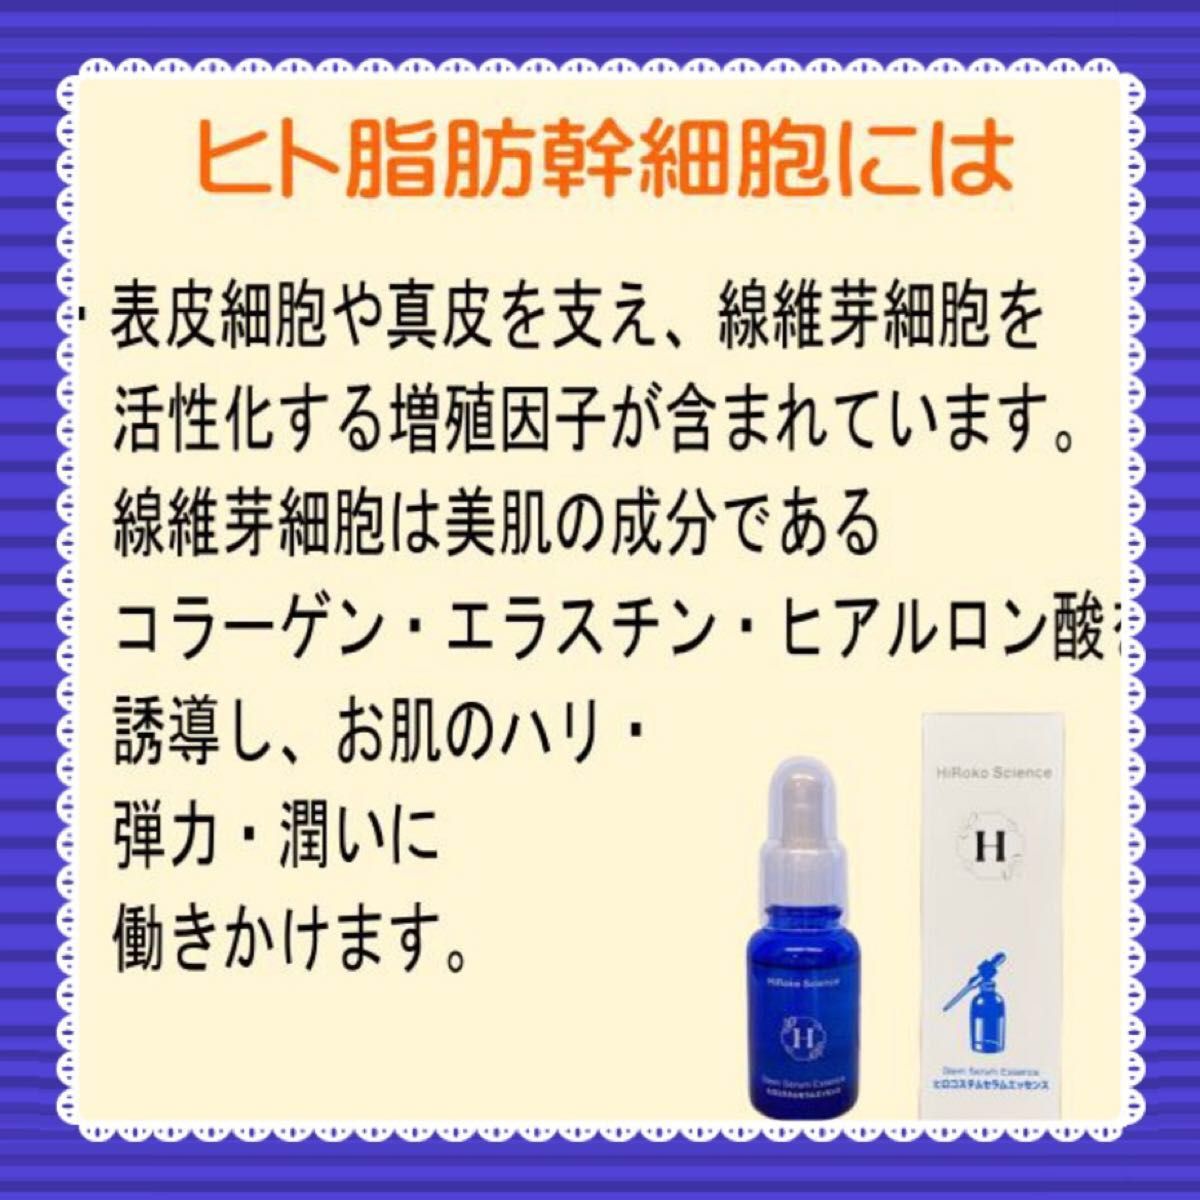 美容液ヒロコセラムエッセンス【脂肪幹細胞上清液&洗顔ソープナノ